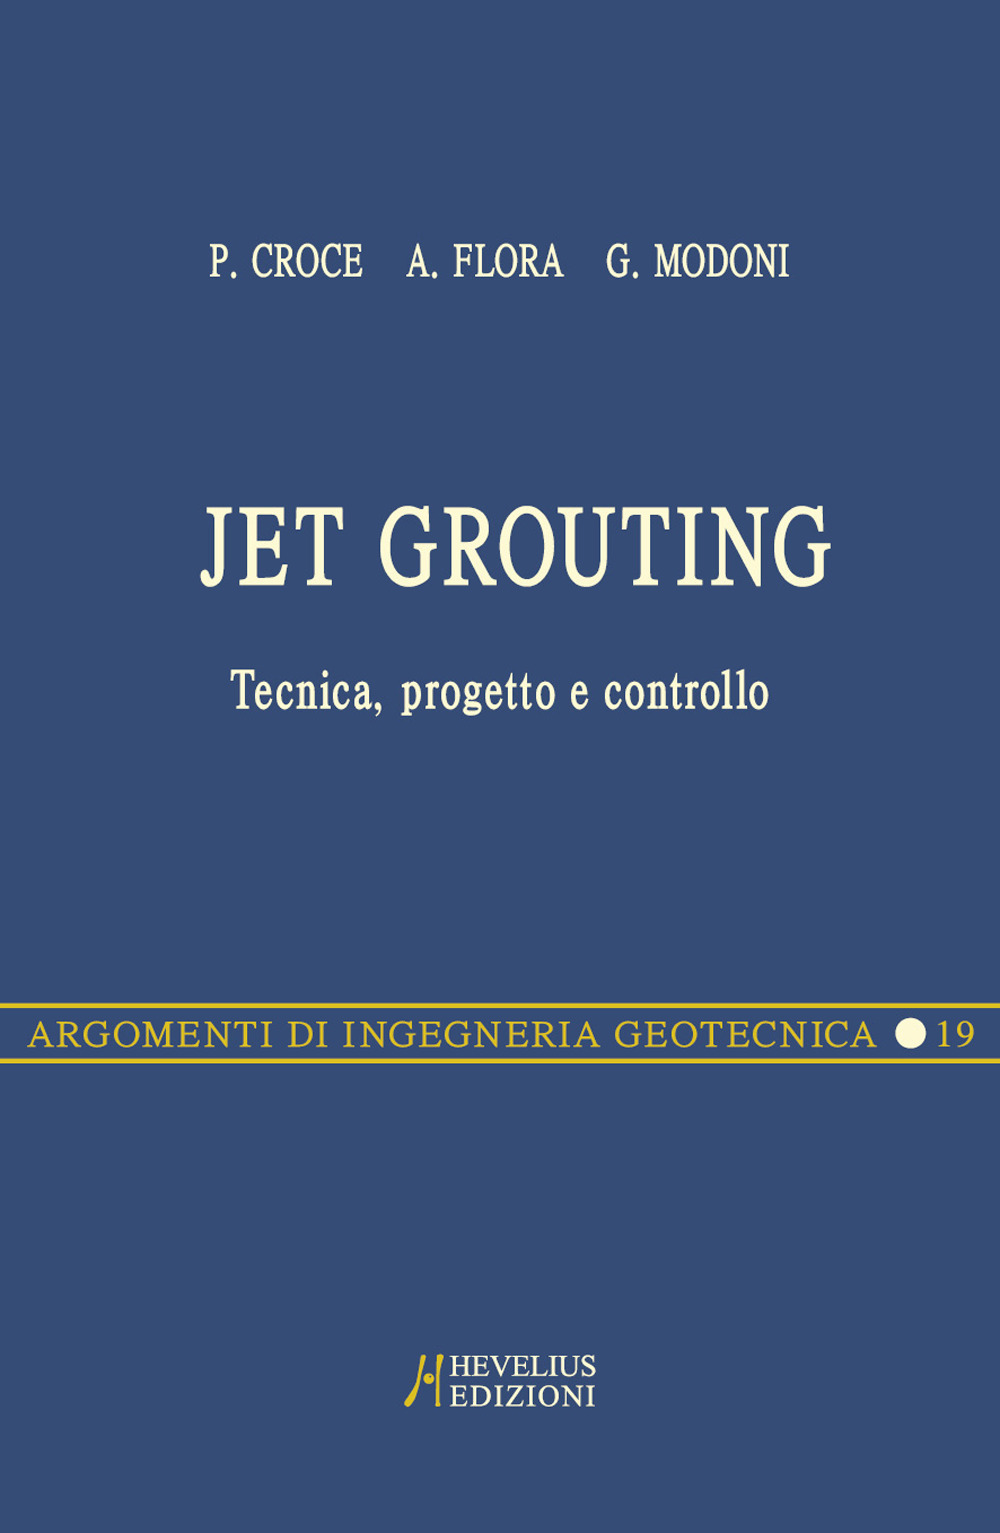 Jet grouting. Tecnica, progetto e controllo